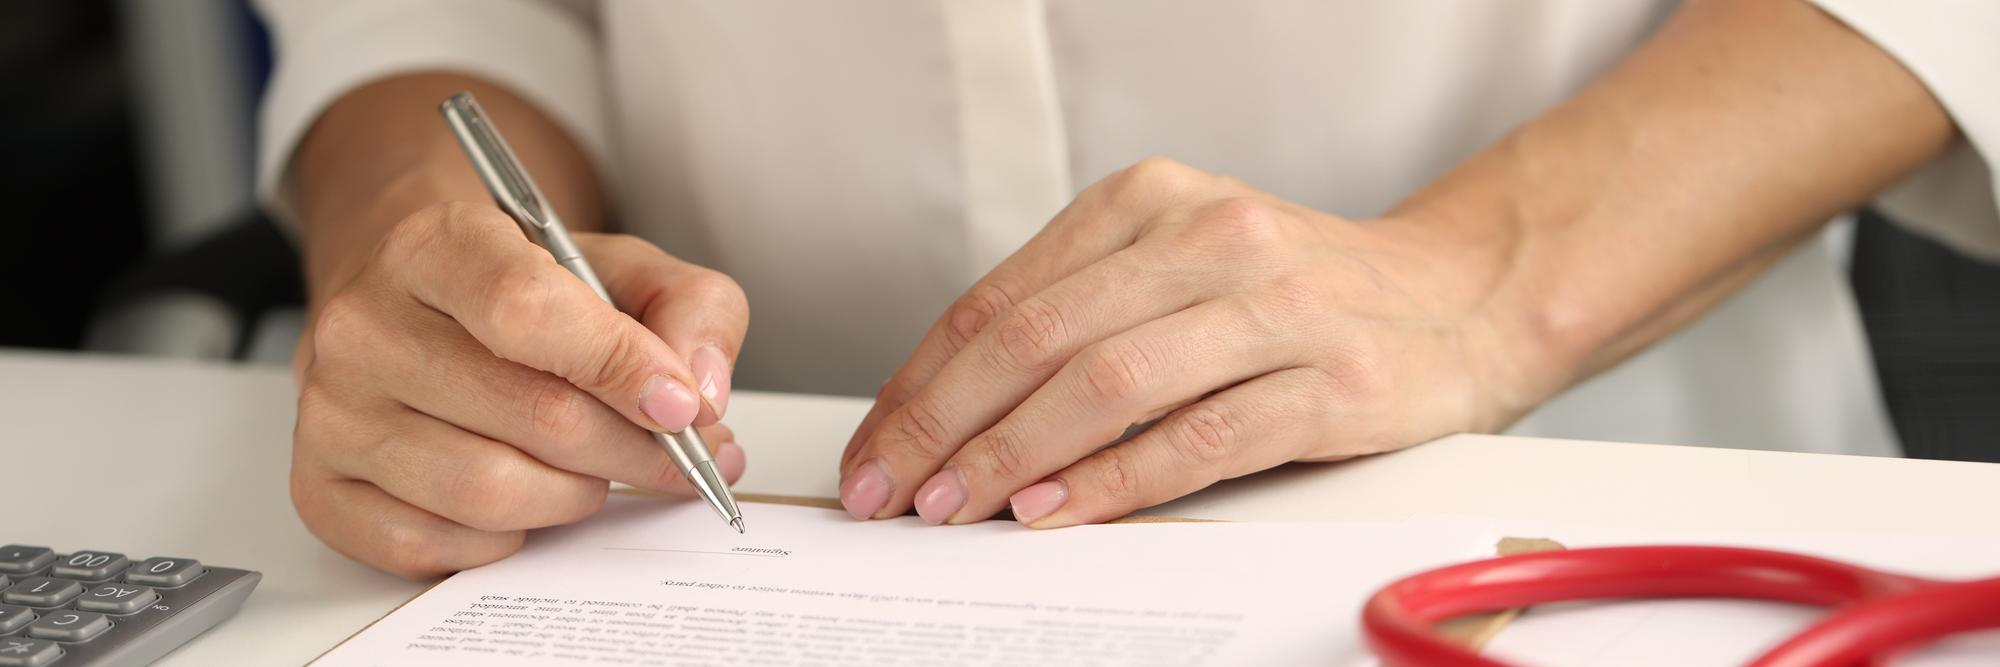 איך לחתום על חוזה בצורה נכונה?